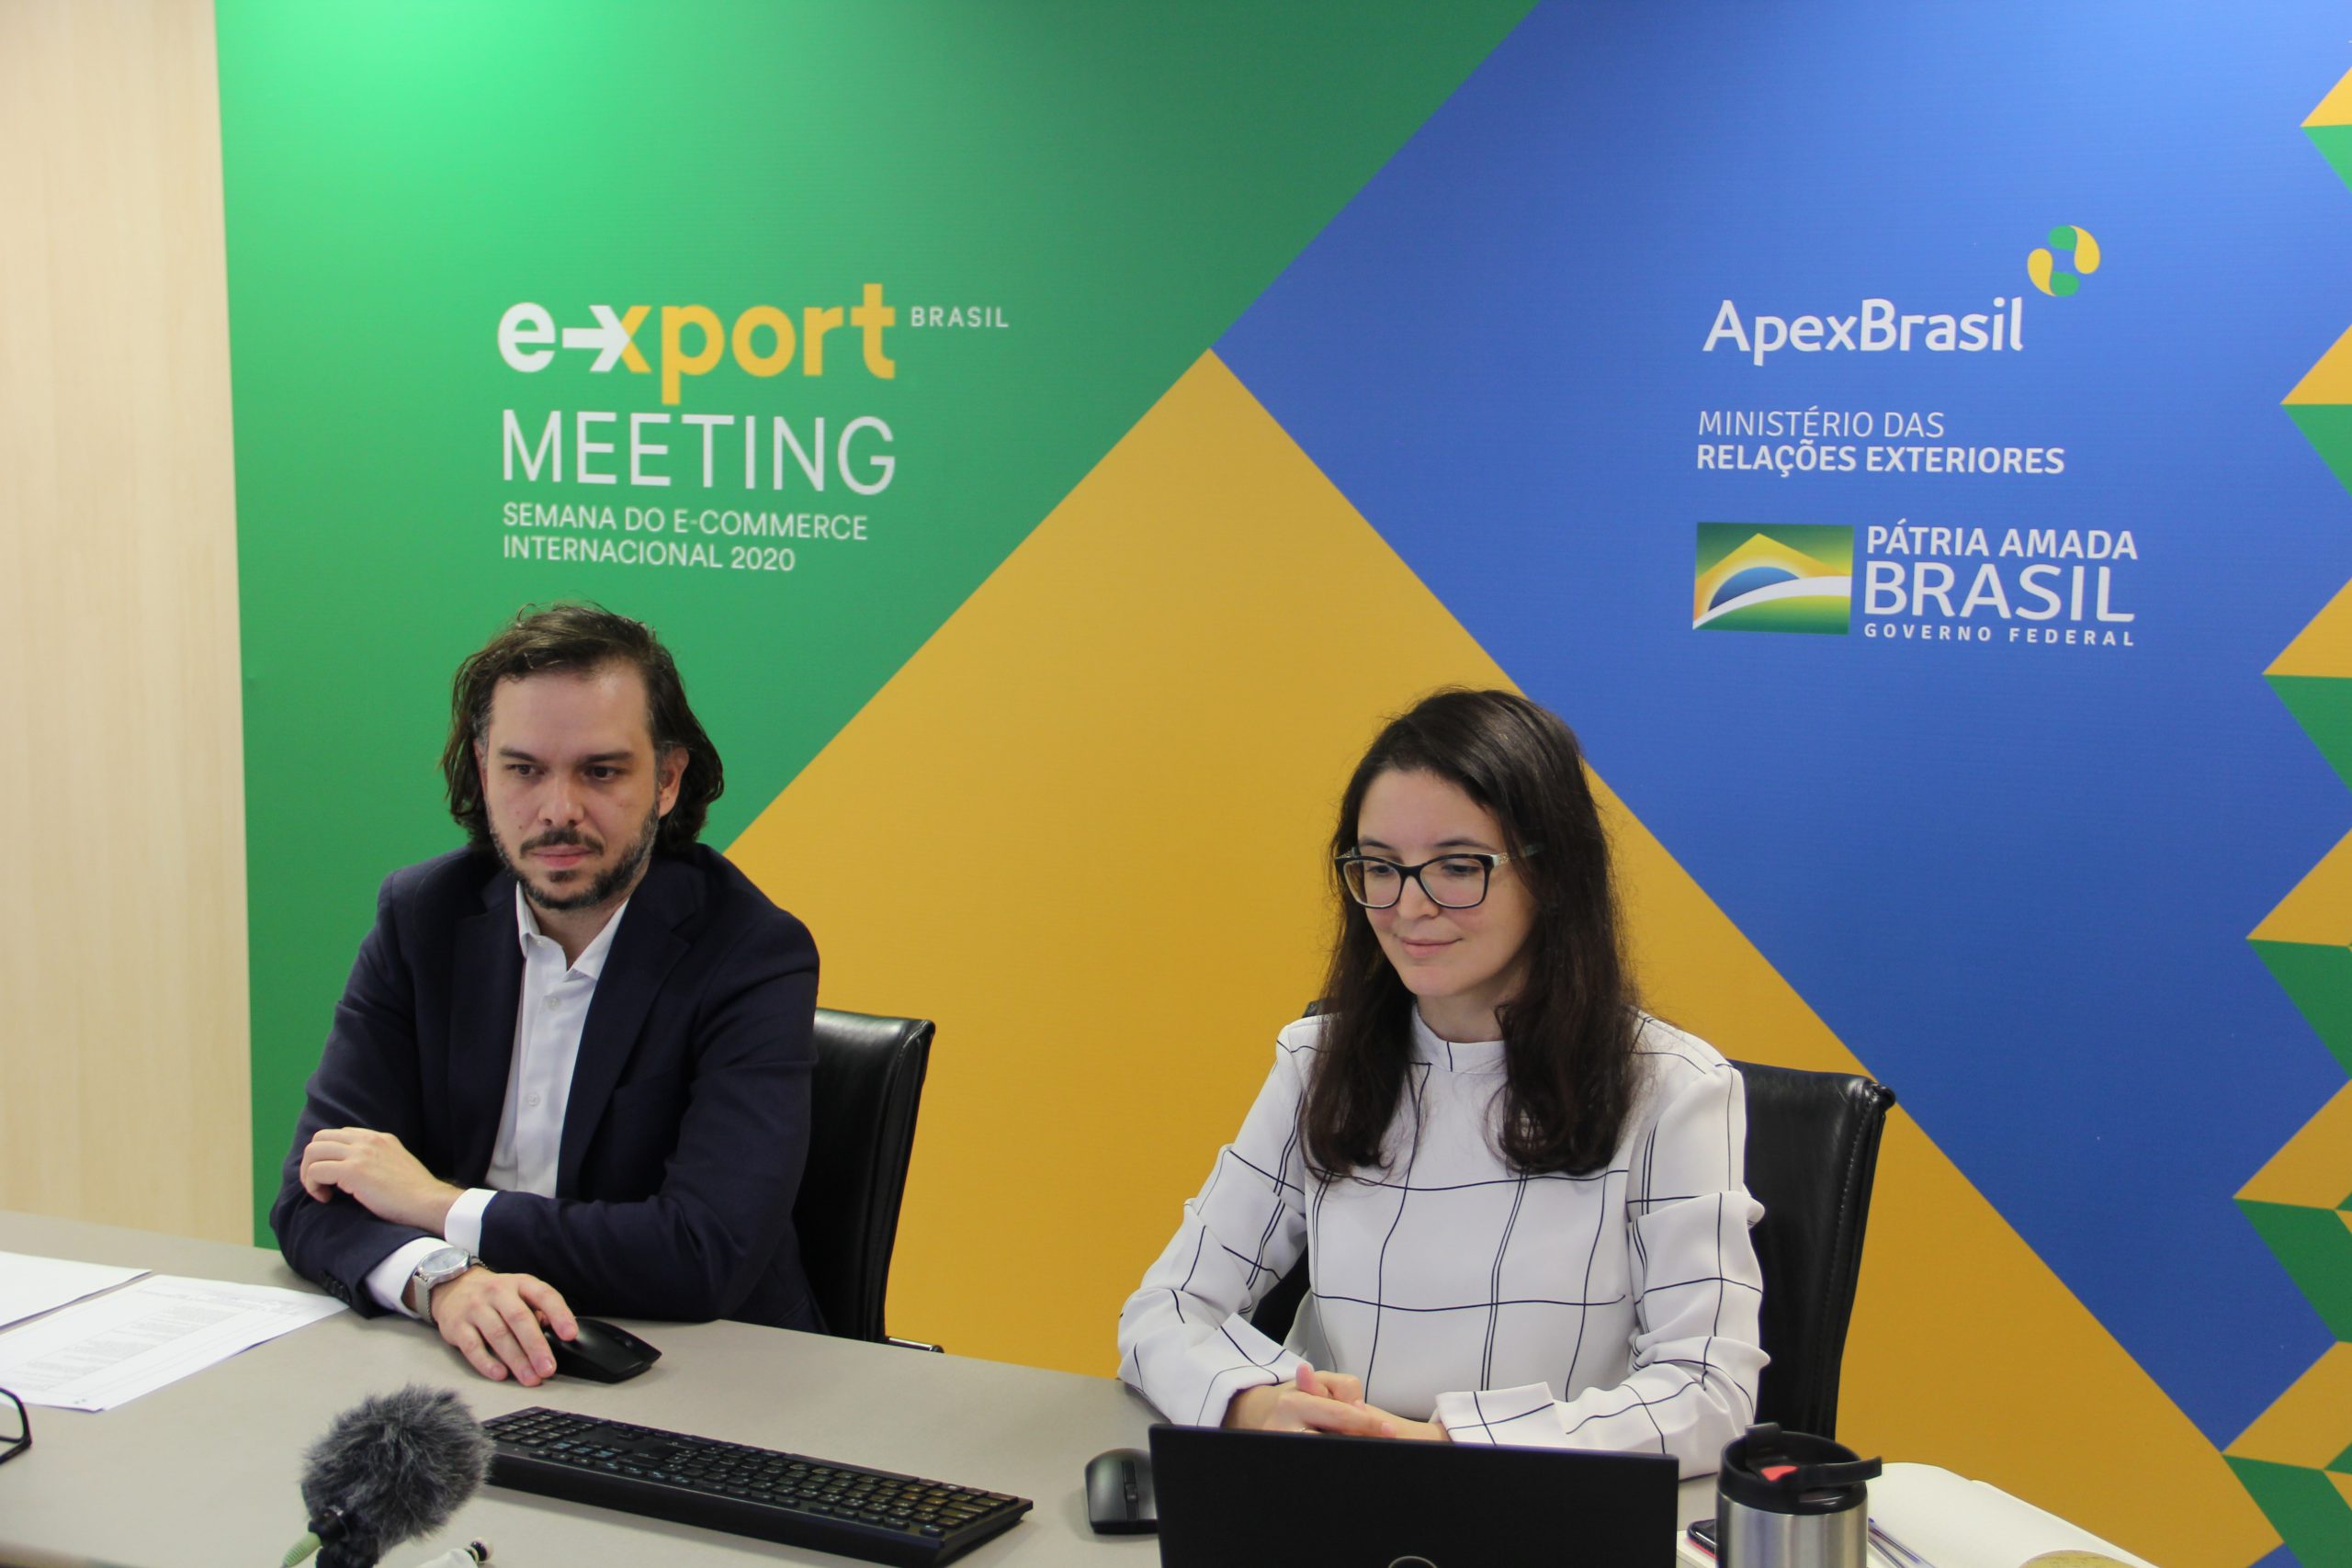 Apex-Brasil encerra primeira edição do e-Xport Meeting com balanço positivo